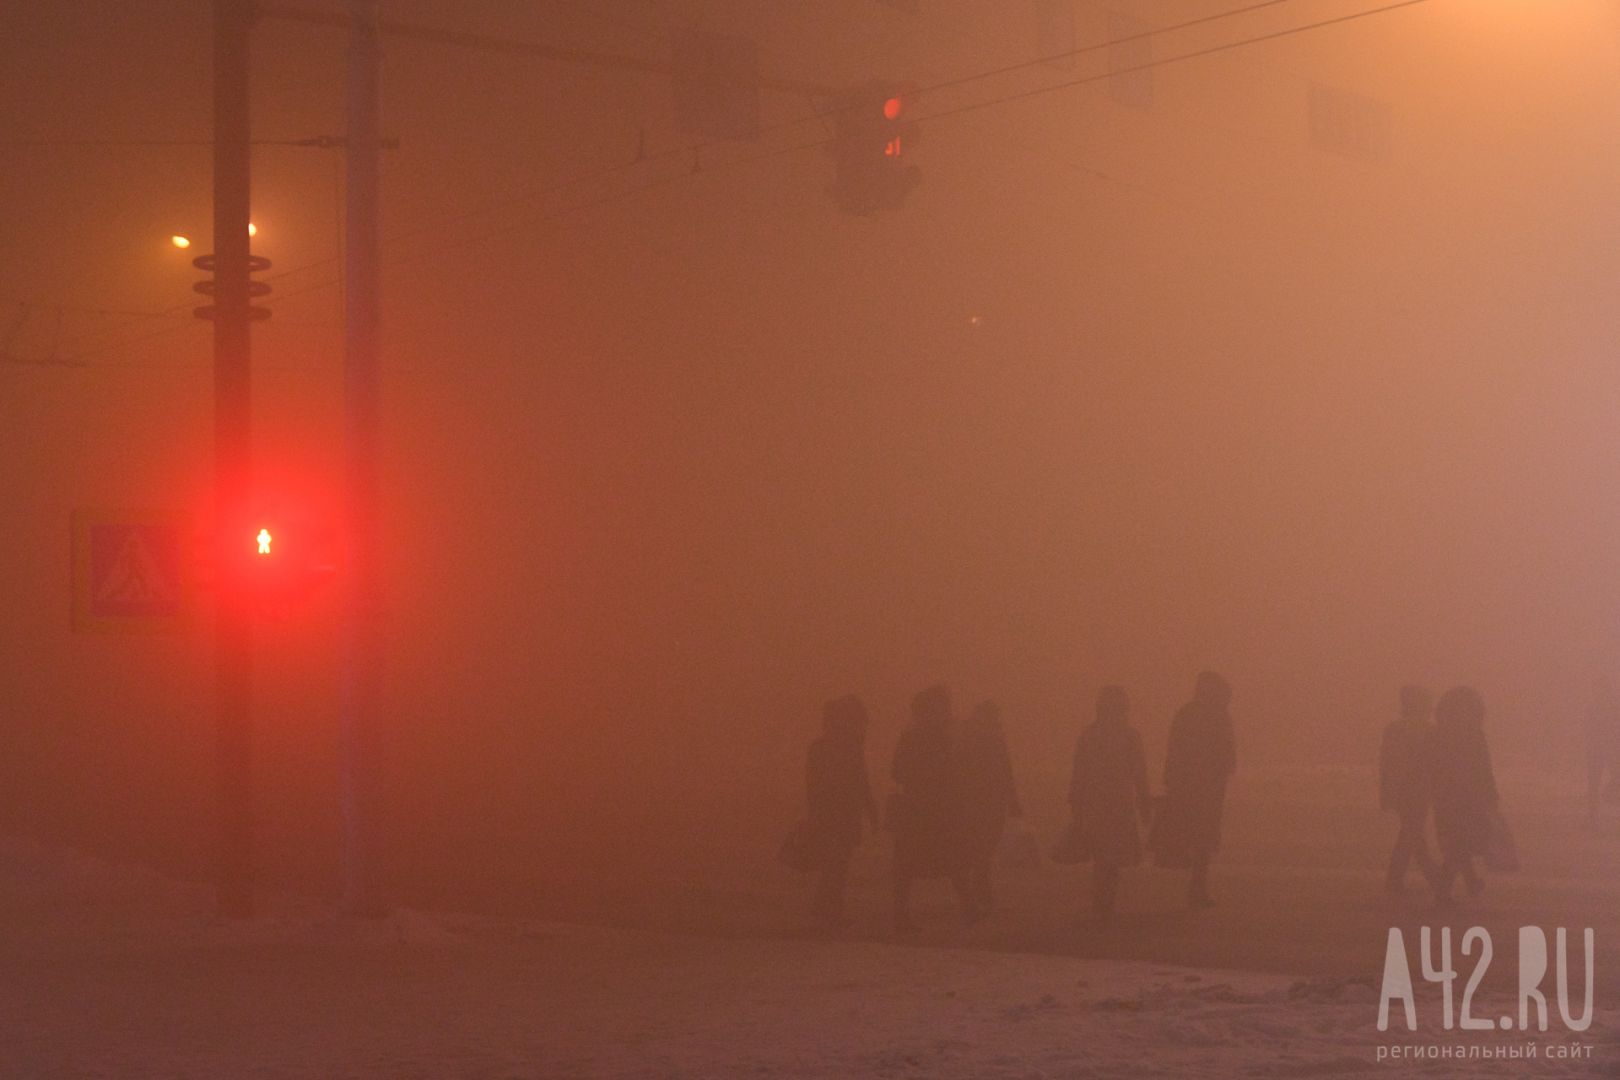 Предприятия, фуры, частный сектор: Цивилёв назвал главные причины смога в Кемерове